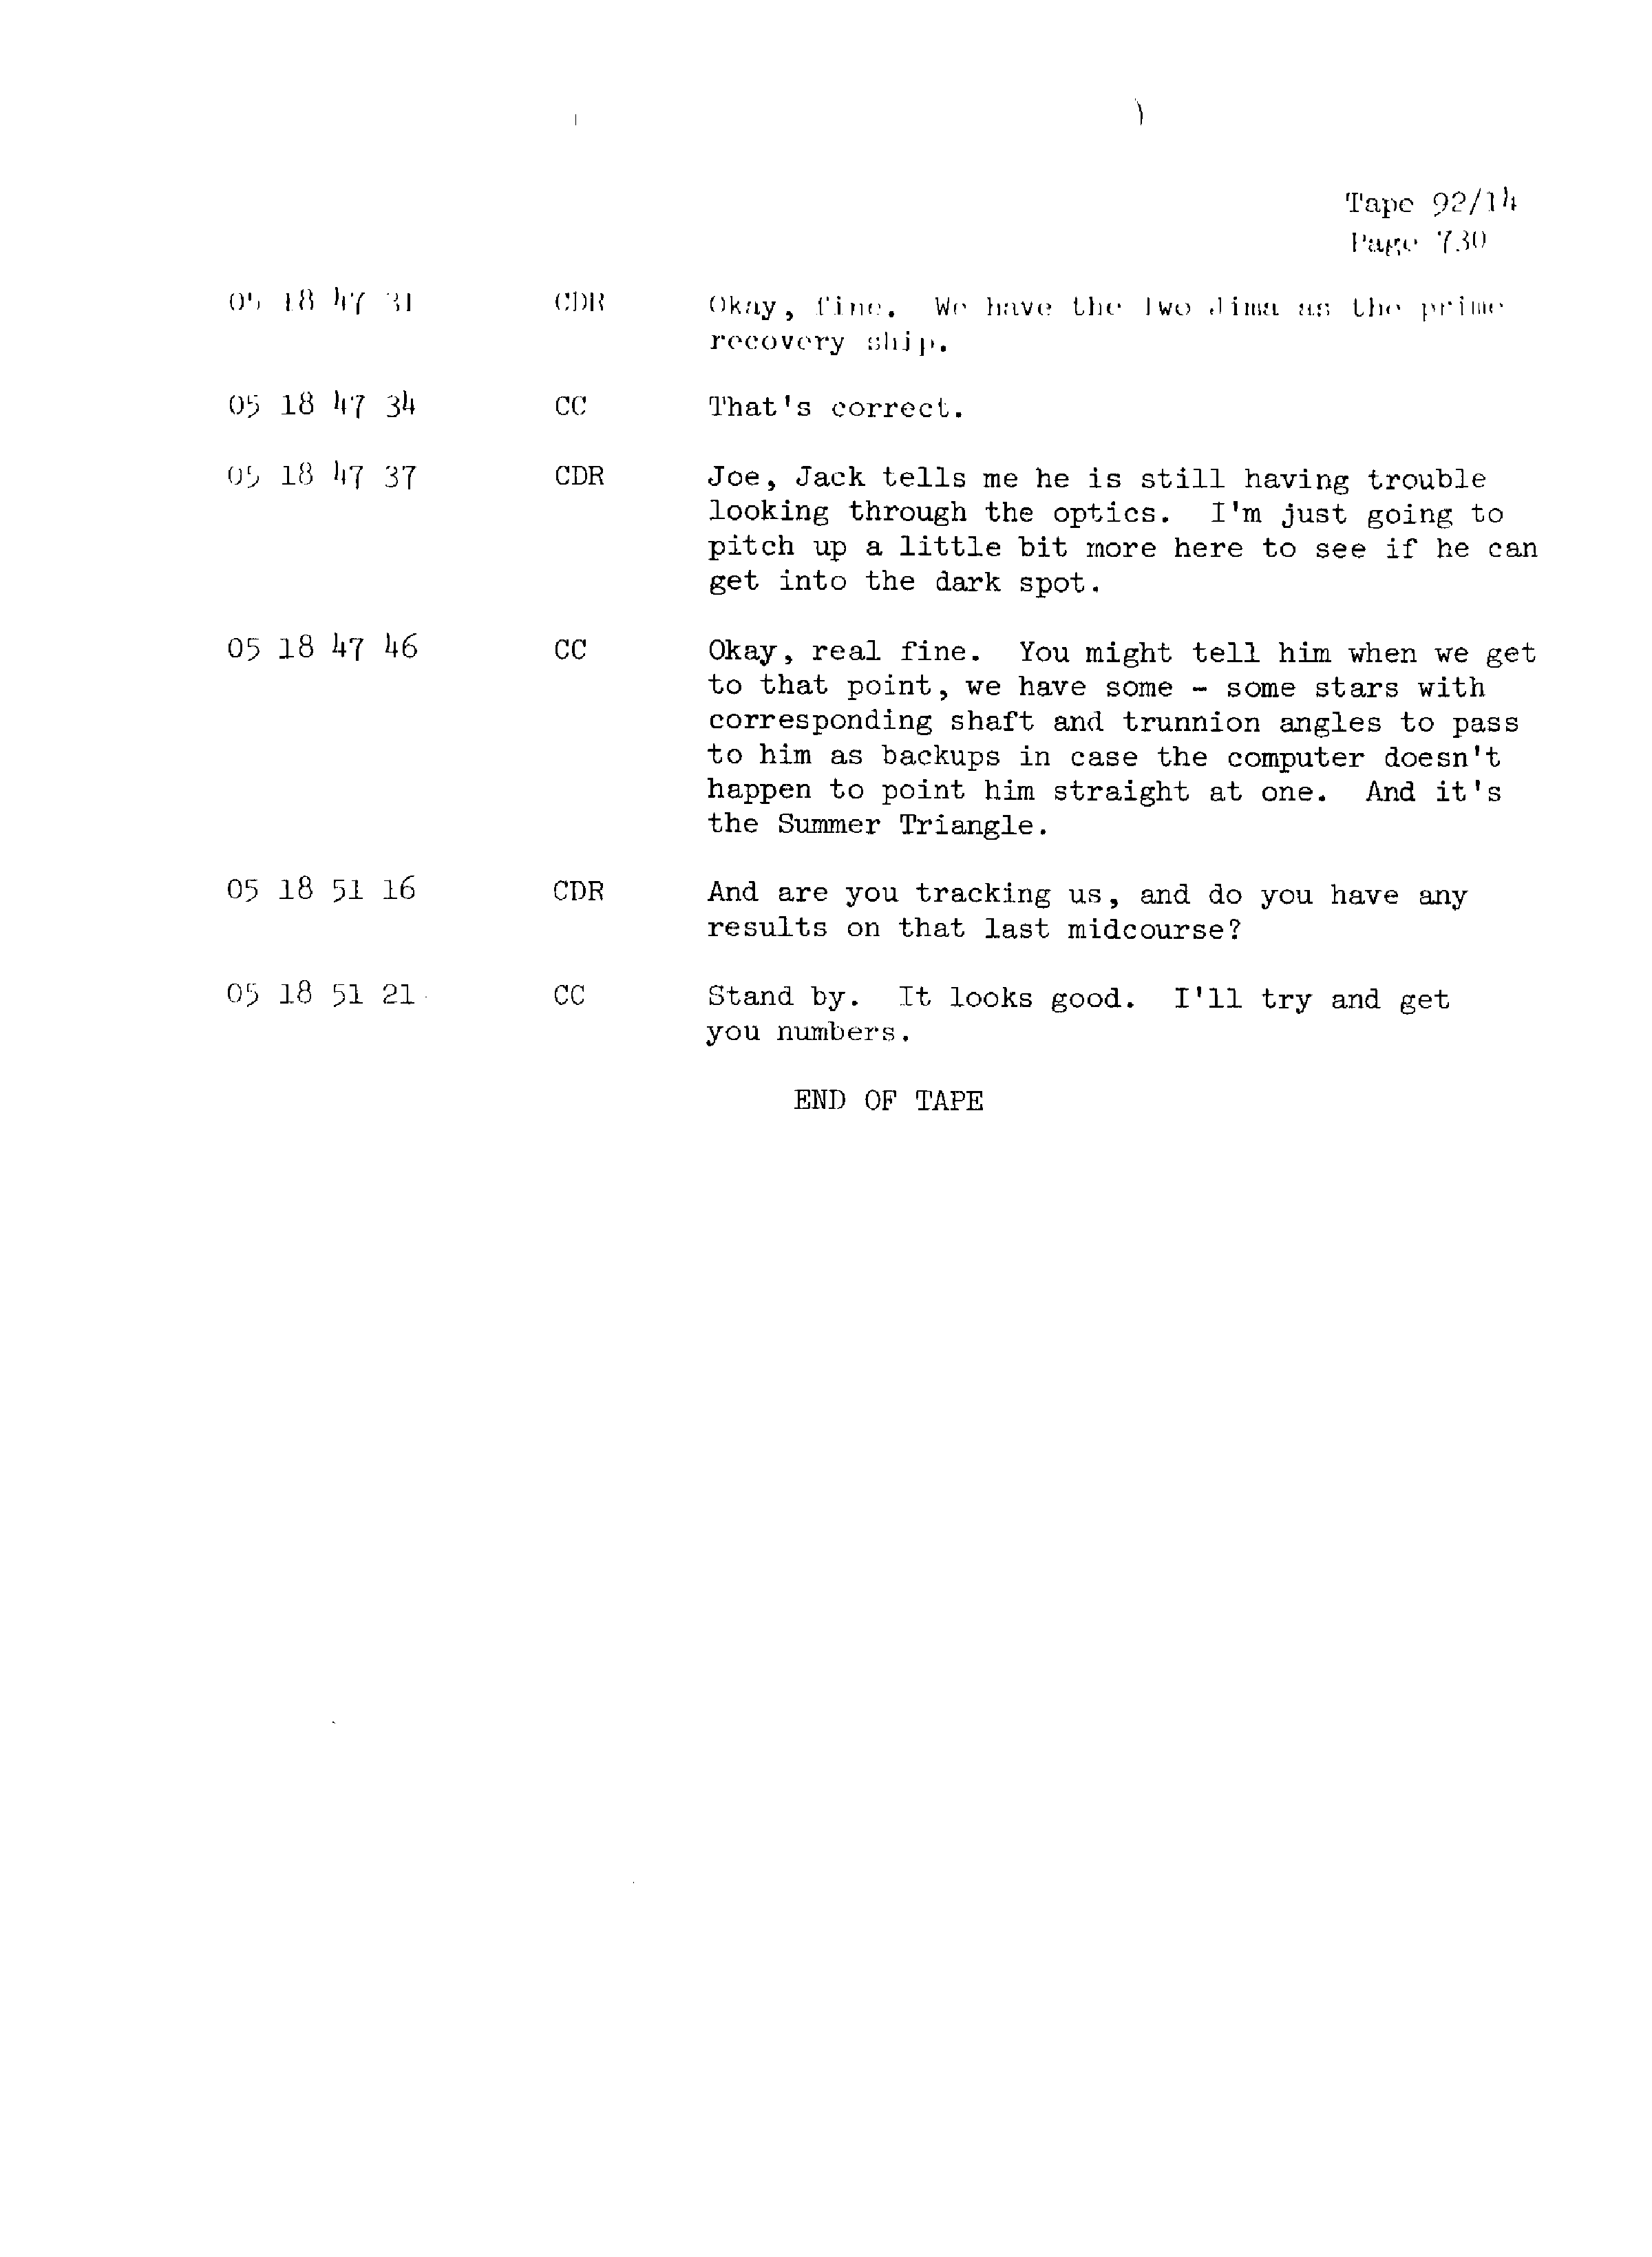 Page 737 of Apollo 13’s original transcript